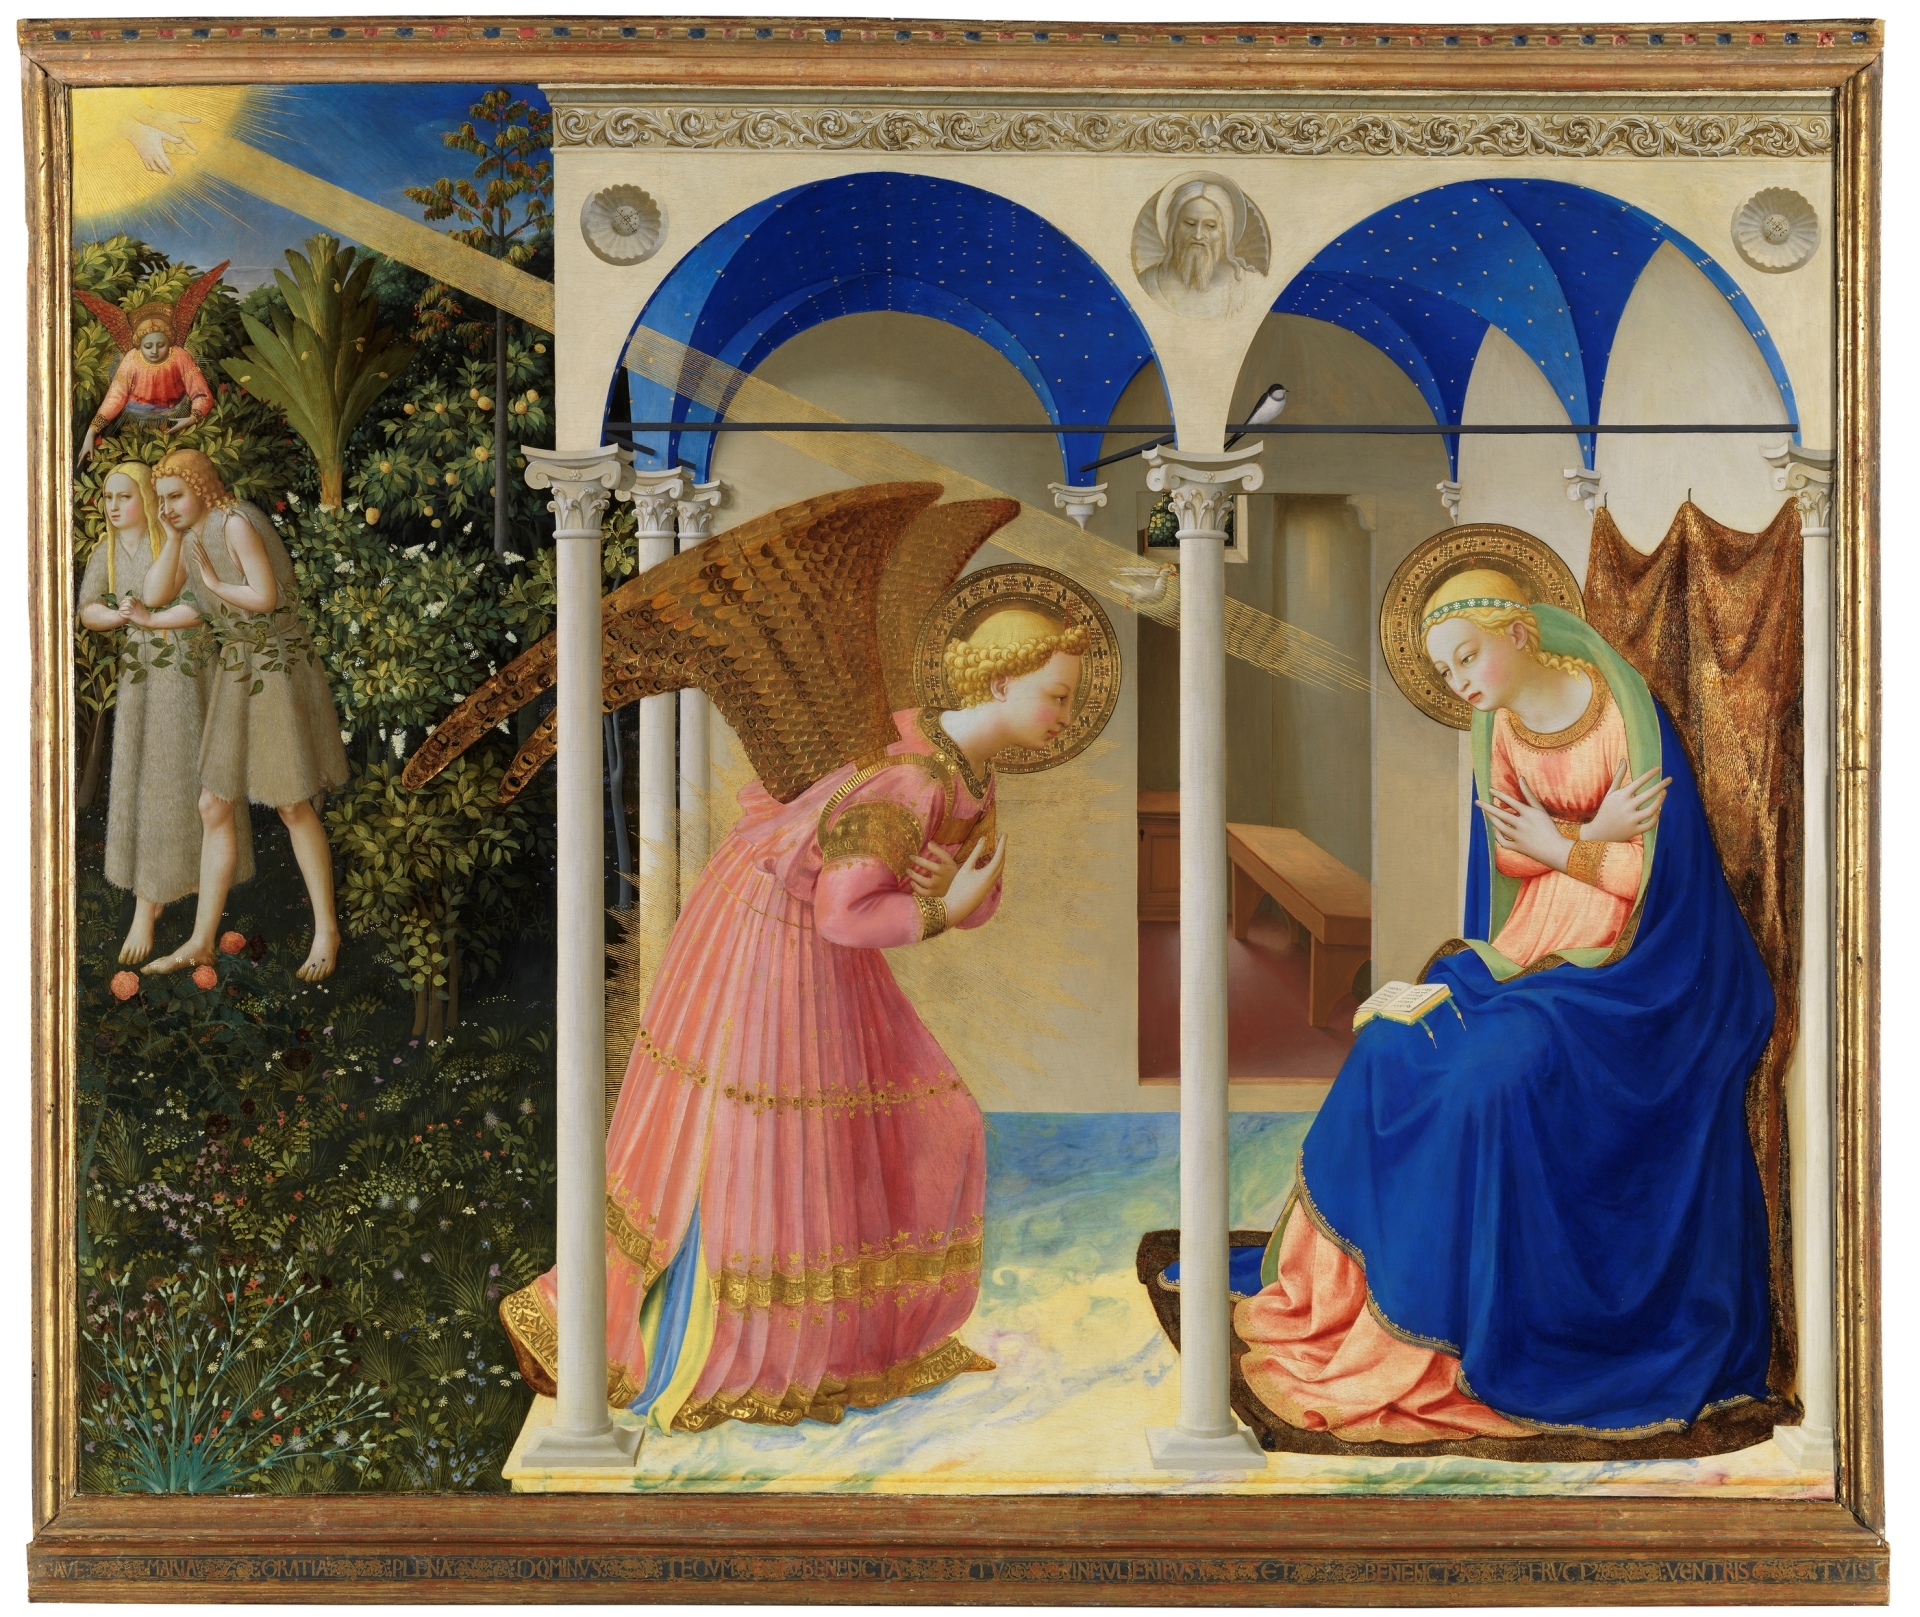 Благовести by Fra Angelico - око 1426. - 162.3 x 191.5 cm 